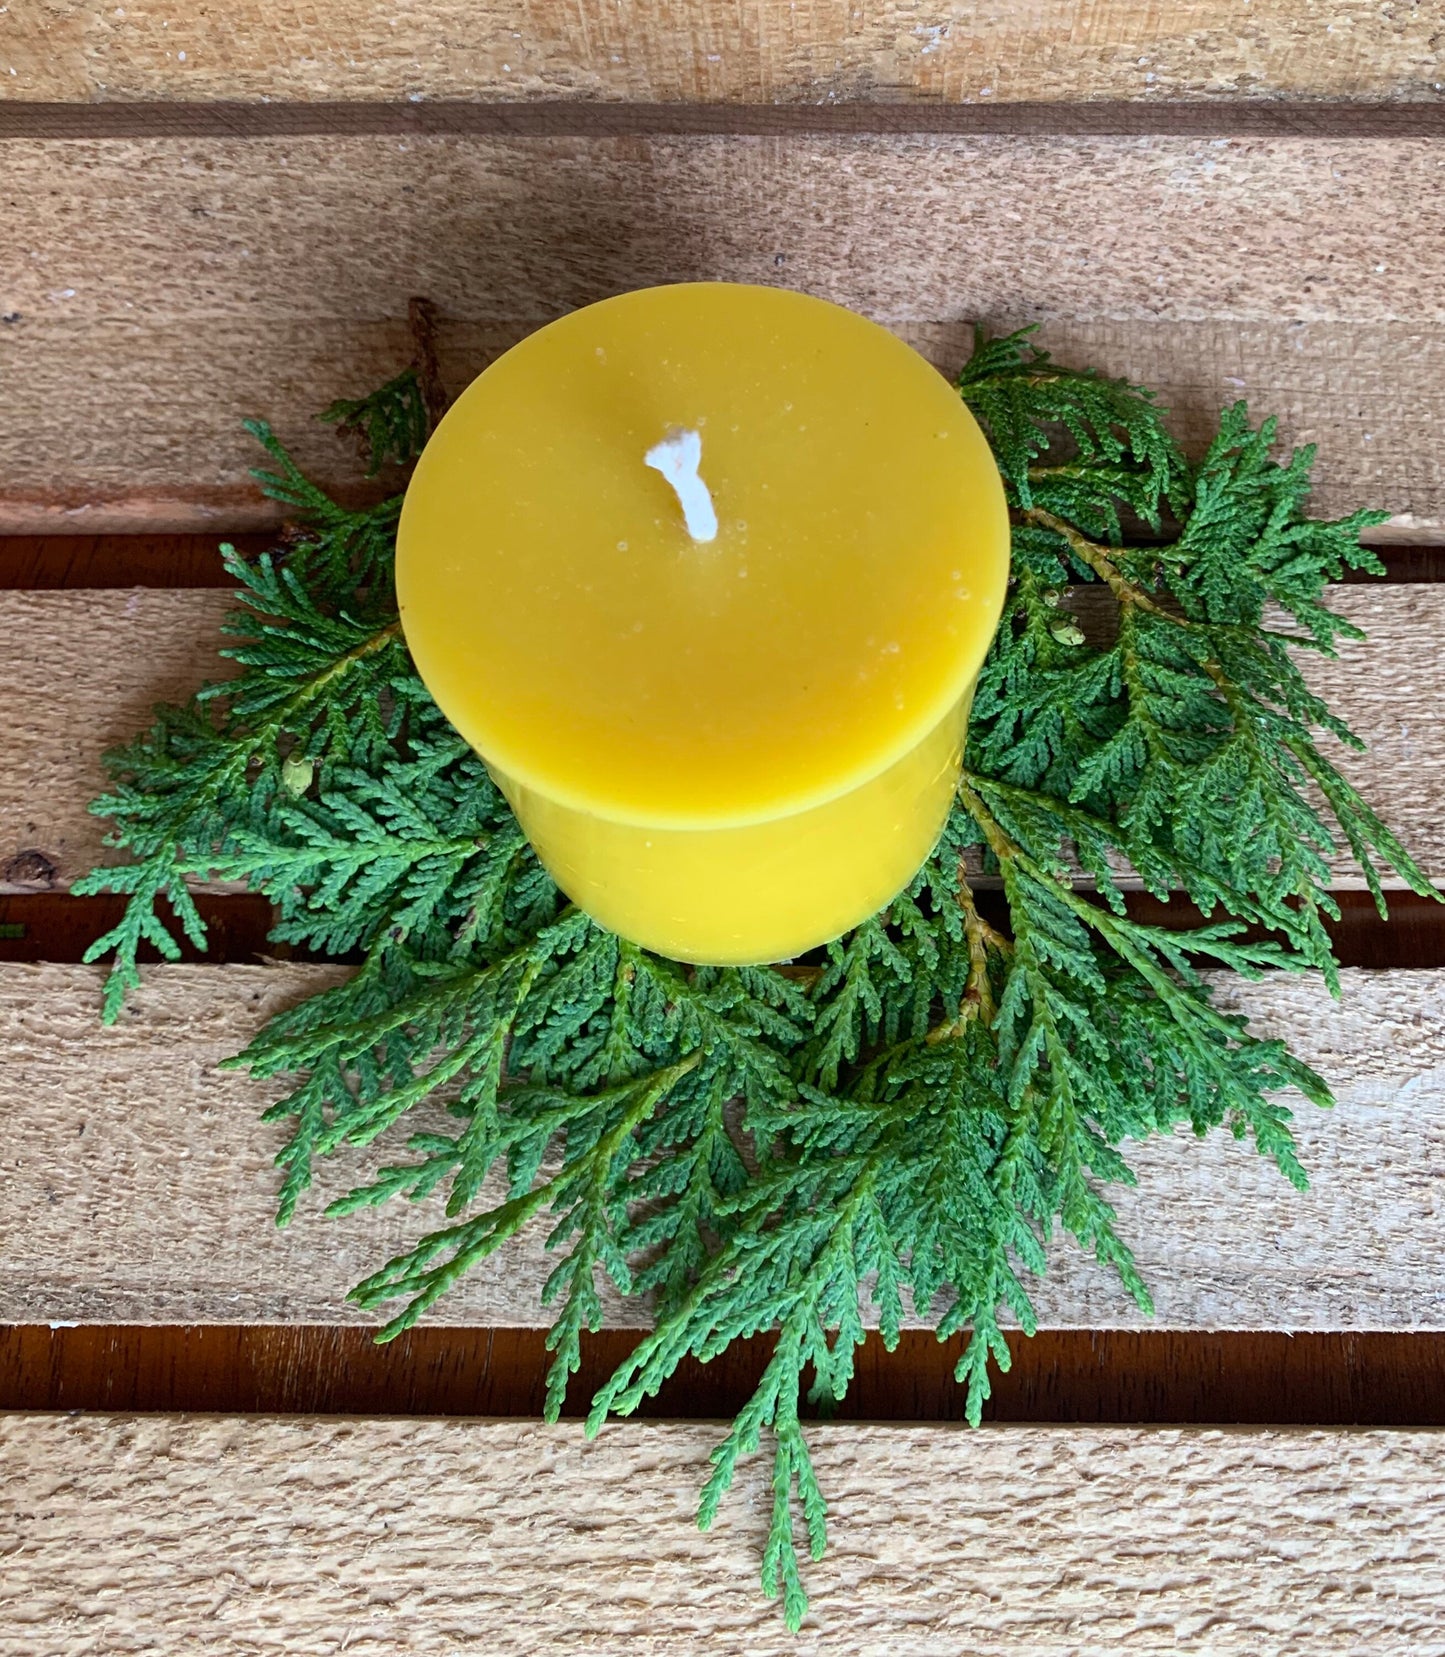 3" x 3" Pillar Candle- Pure Beeswax- Pillar Candle